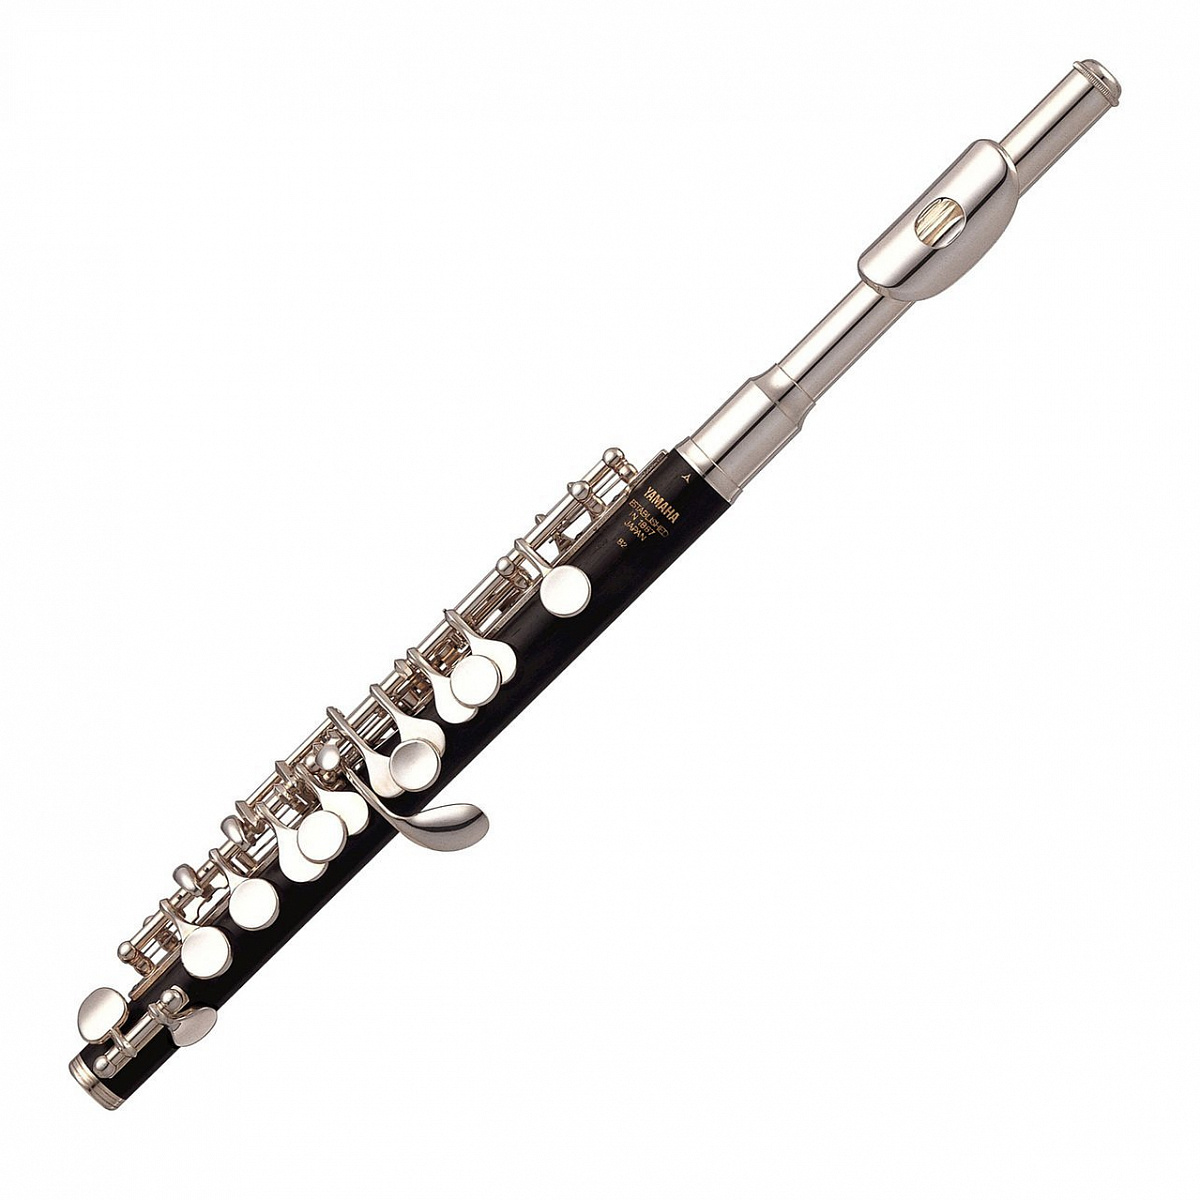 Сборник флейты. Флейта-Пикколо флейта. Флейта Пикколо. Флейта-Пикколо деревянный духовой музыкальный инструмент. Пикколо инструмент.